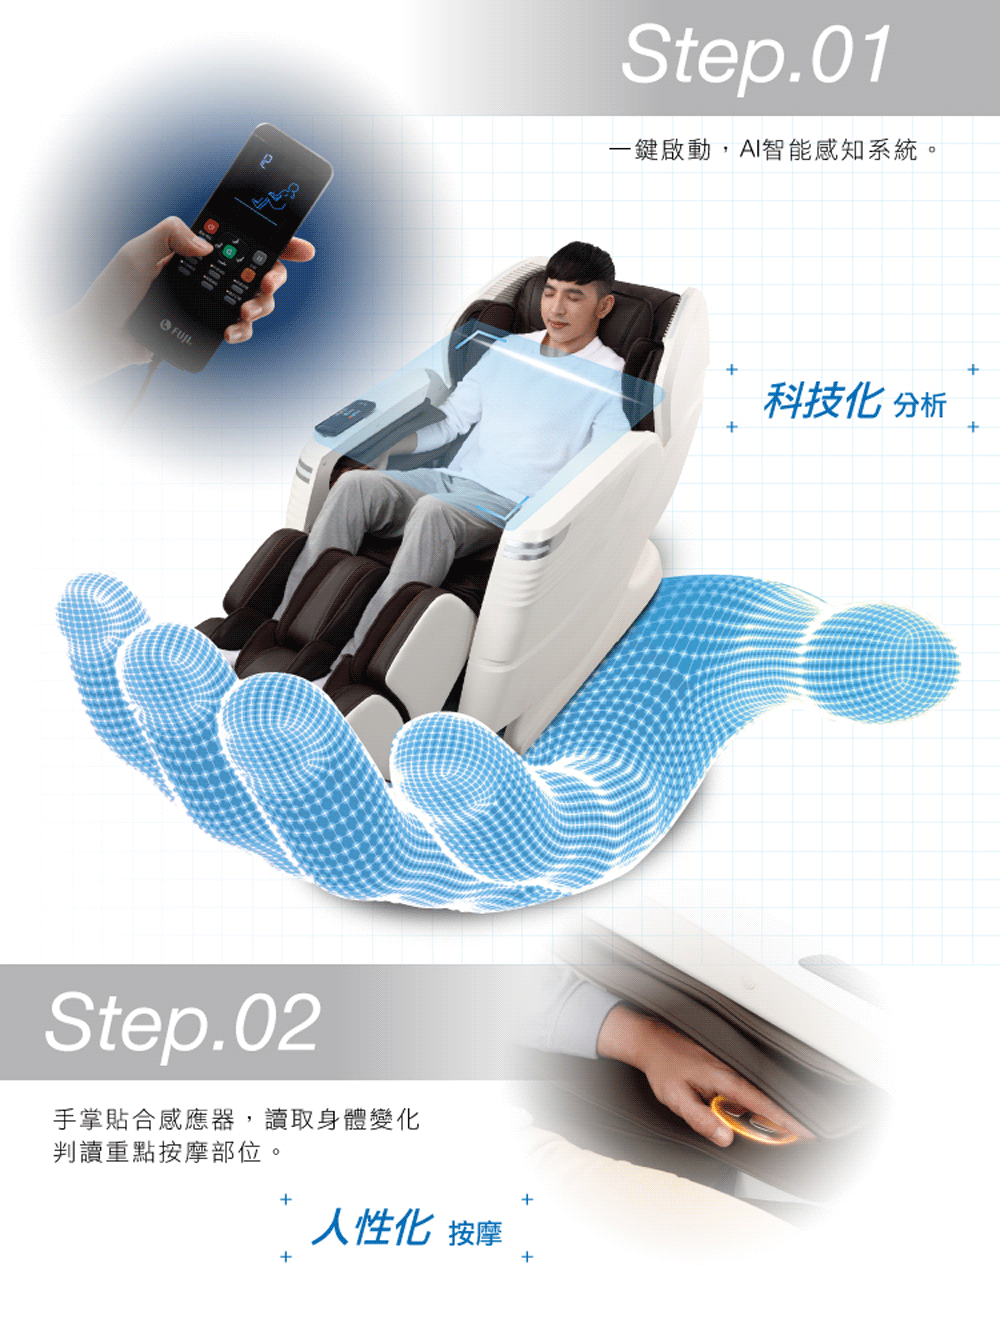 Step.02手掌貼合感應器,讀取身體變化判讀重點按摩部位。+人性化 按摩+Step.01一鍵啟動,AI智能感知系統。++科技化分析++